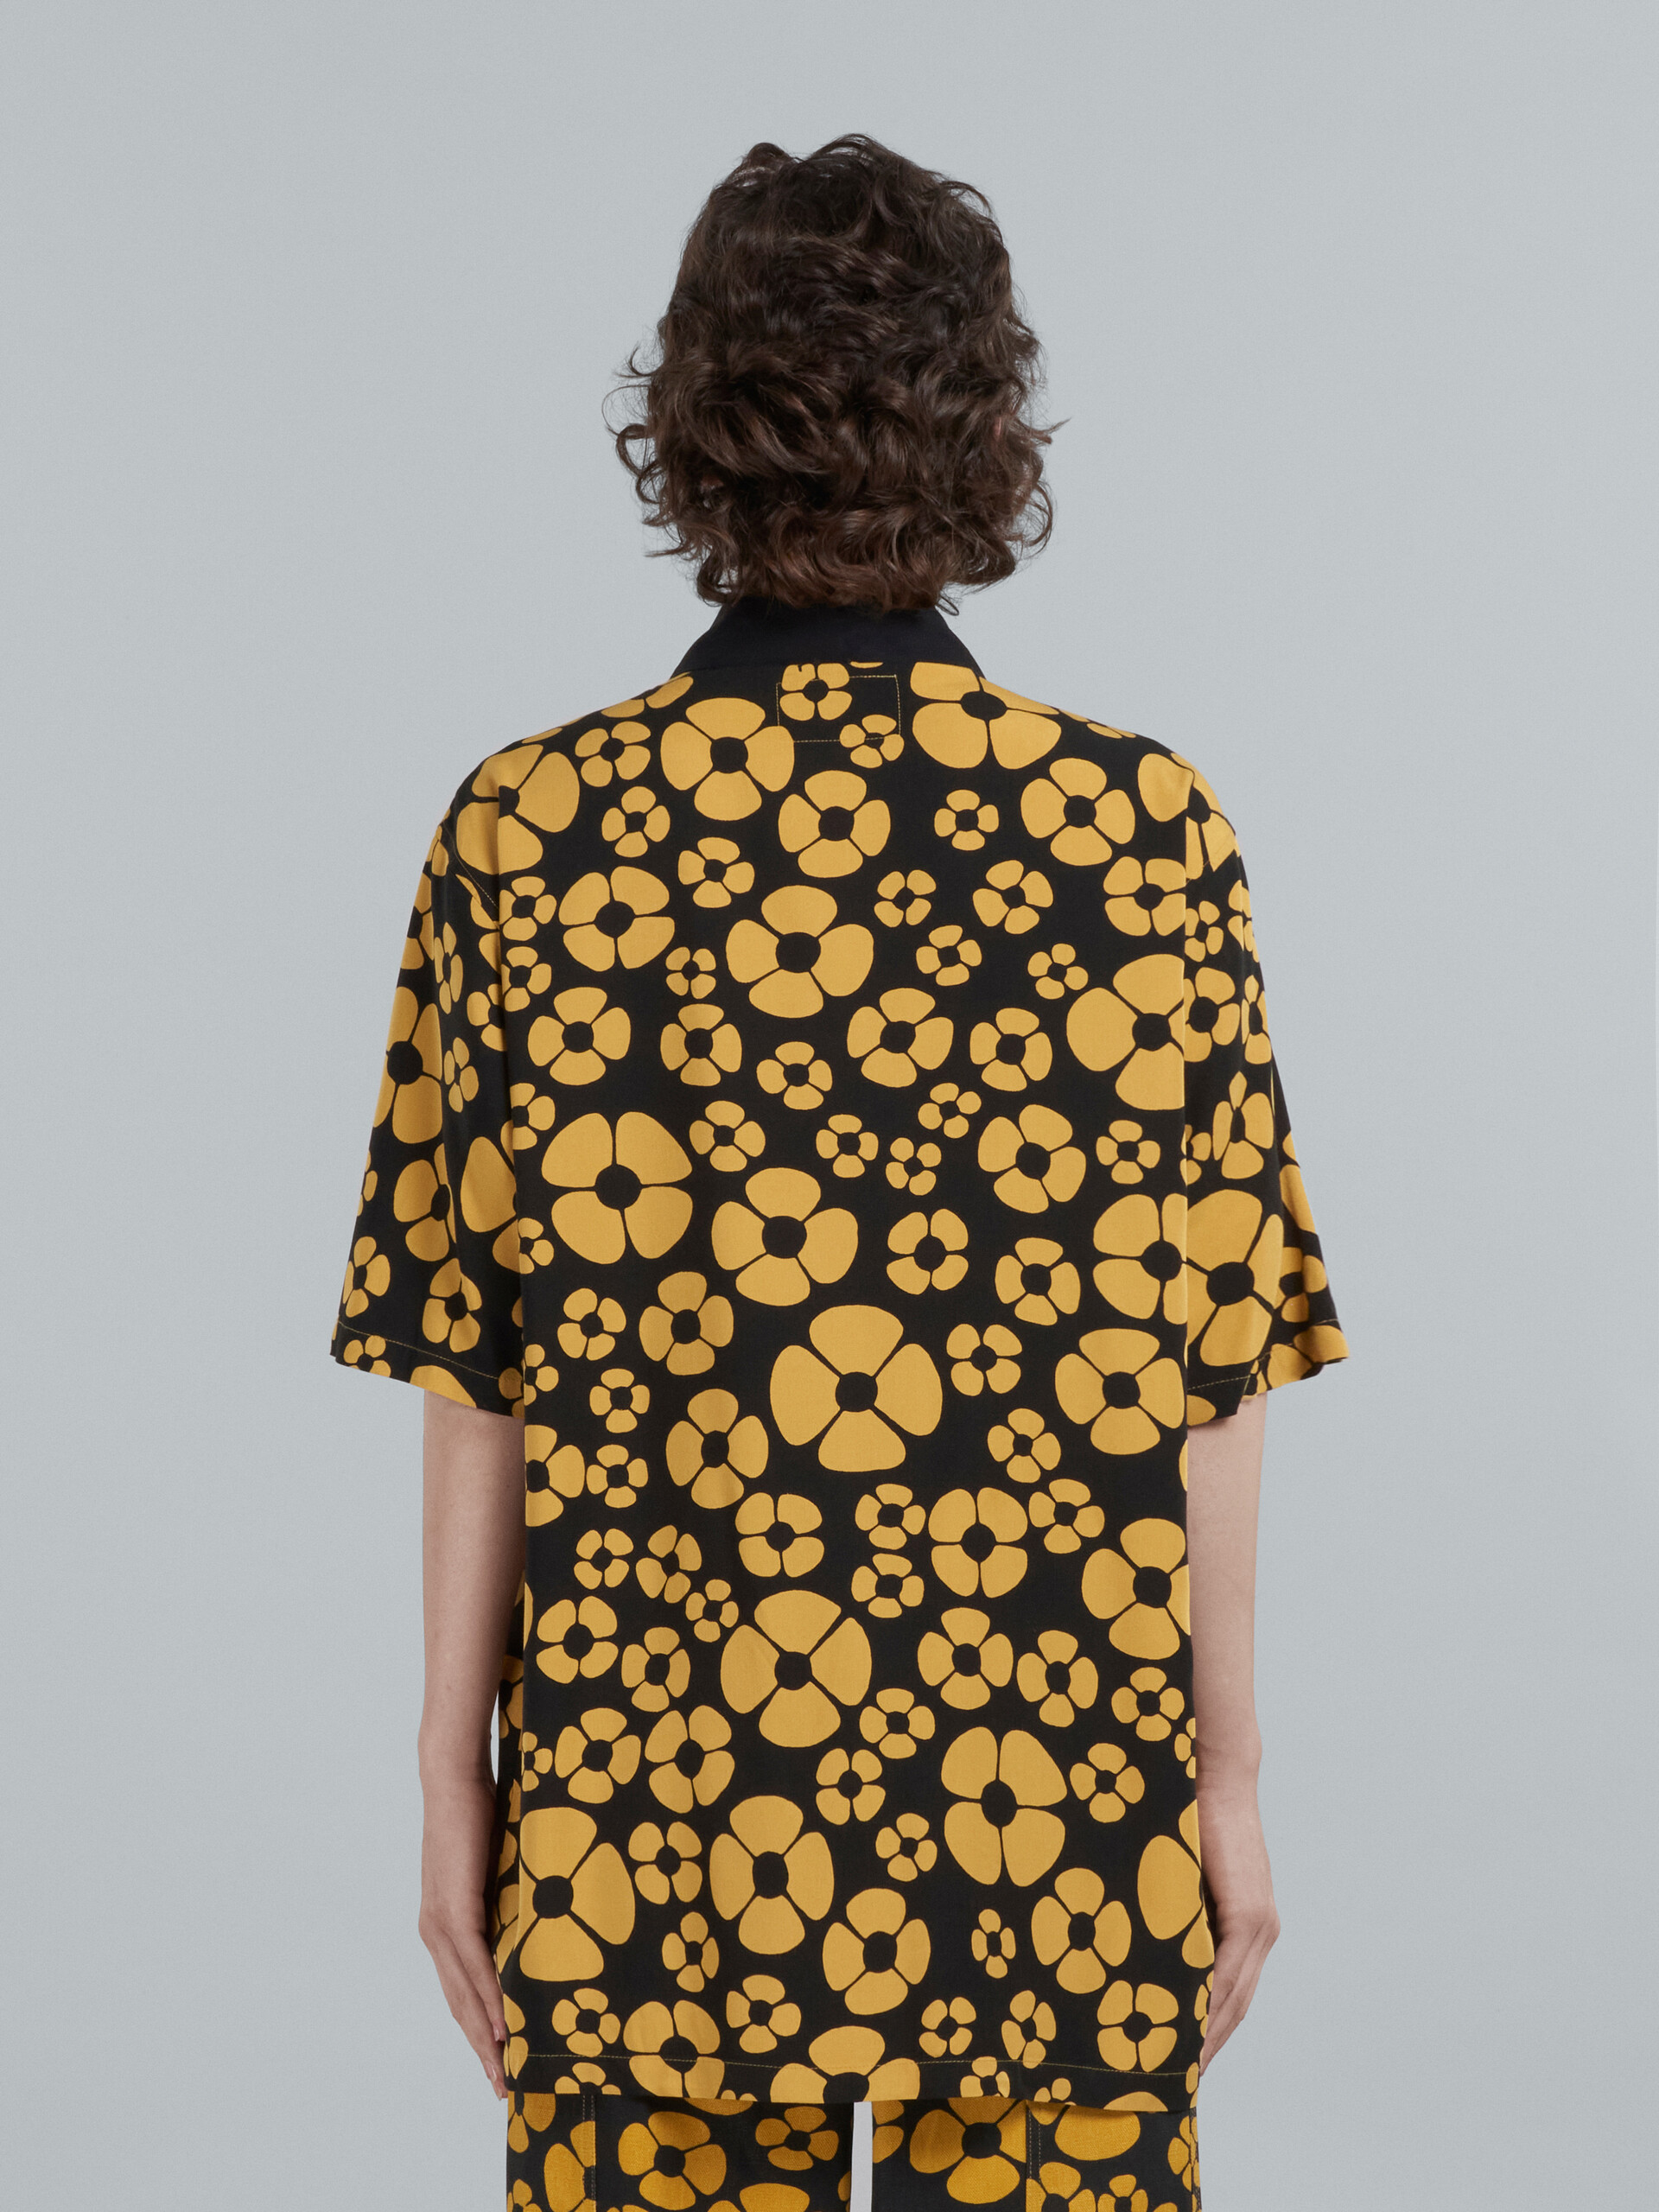 MARNI x CARHARTT WIP - yellow short-sleeved floral shirt - Shirts - Image 3